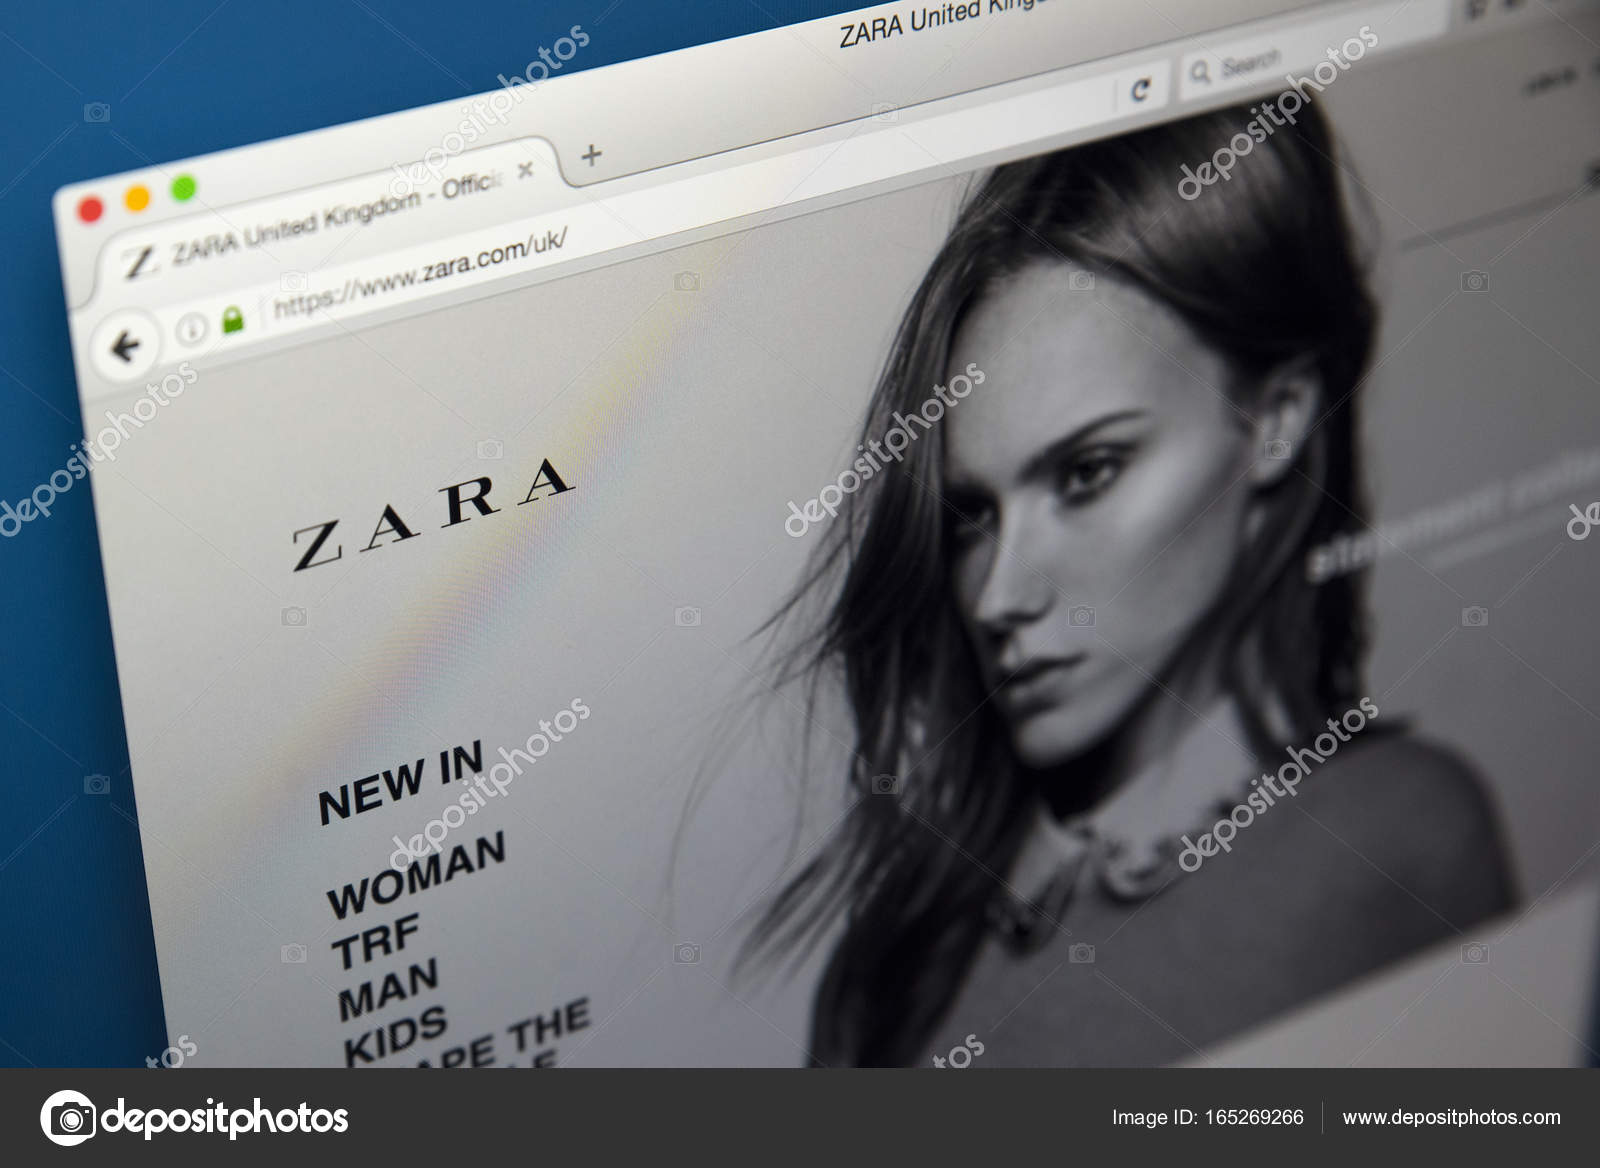 www zara official website